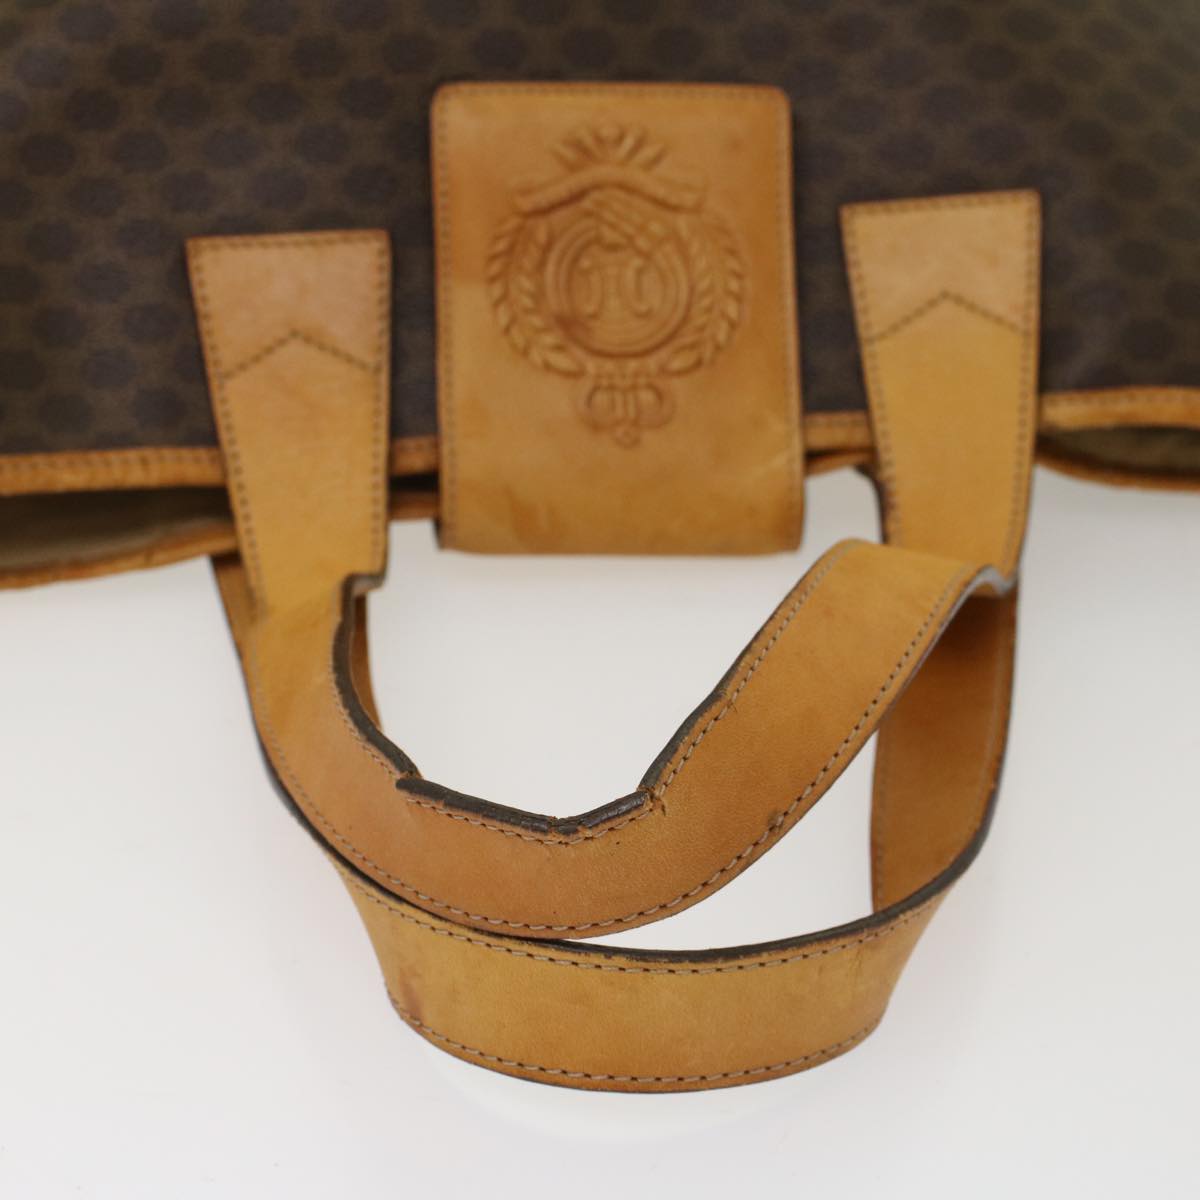 CELINE Macadam Canvas Shoulder Bag PVC Leather Brown Auth bs7113